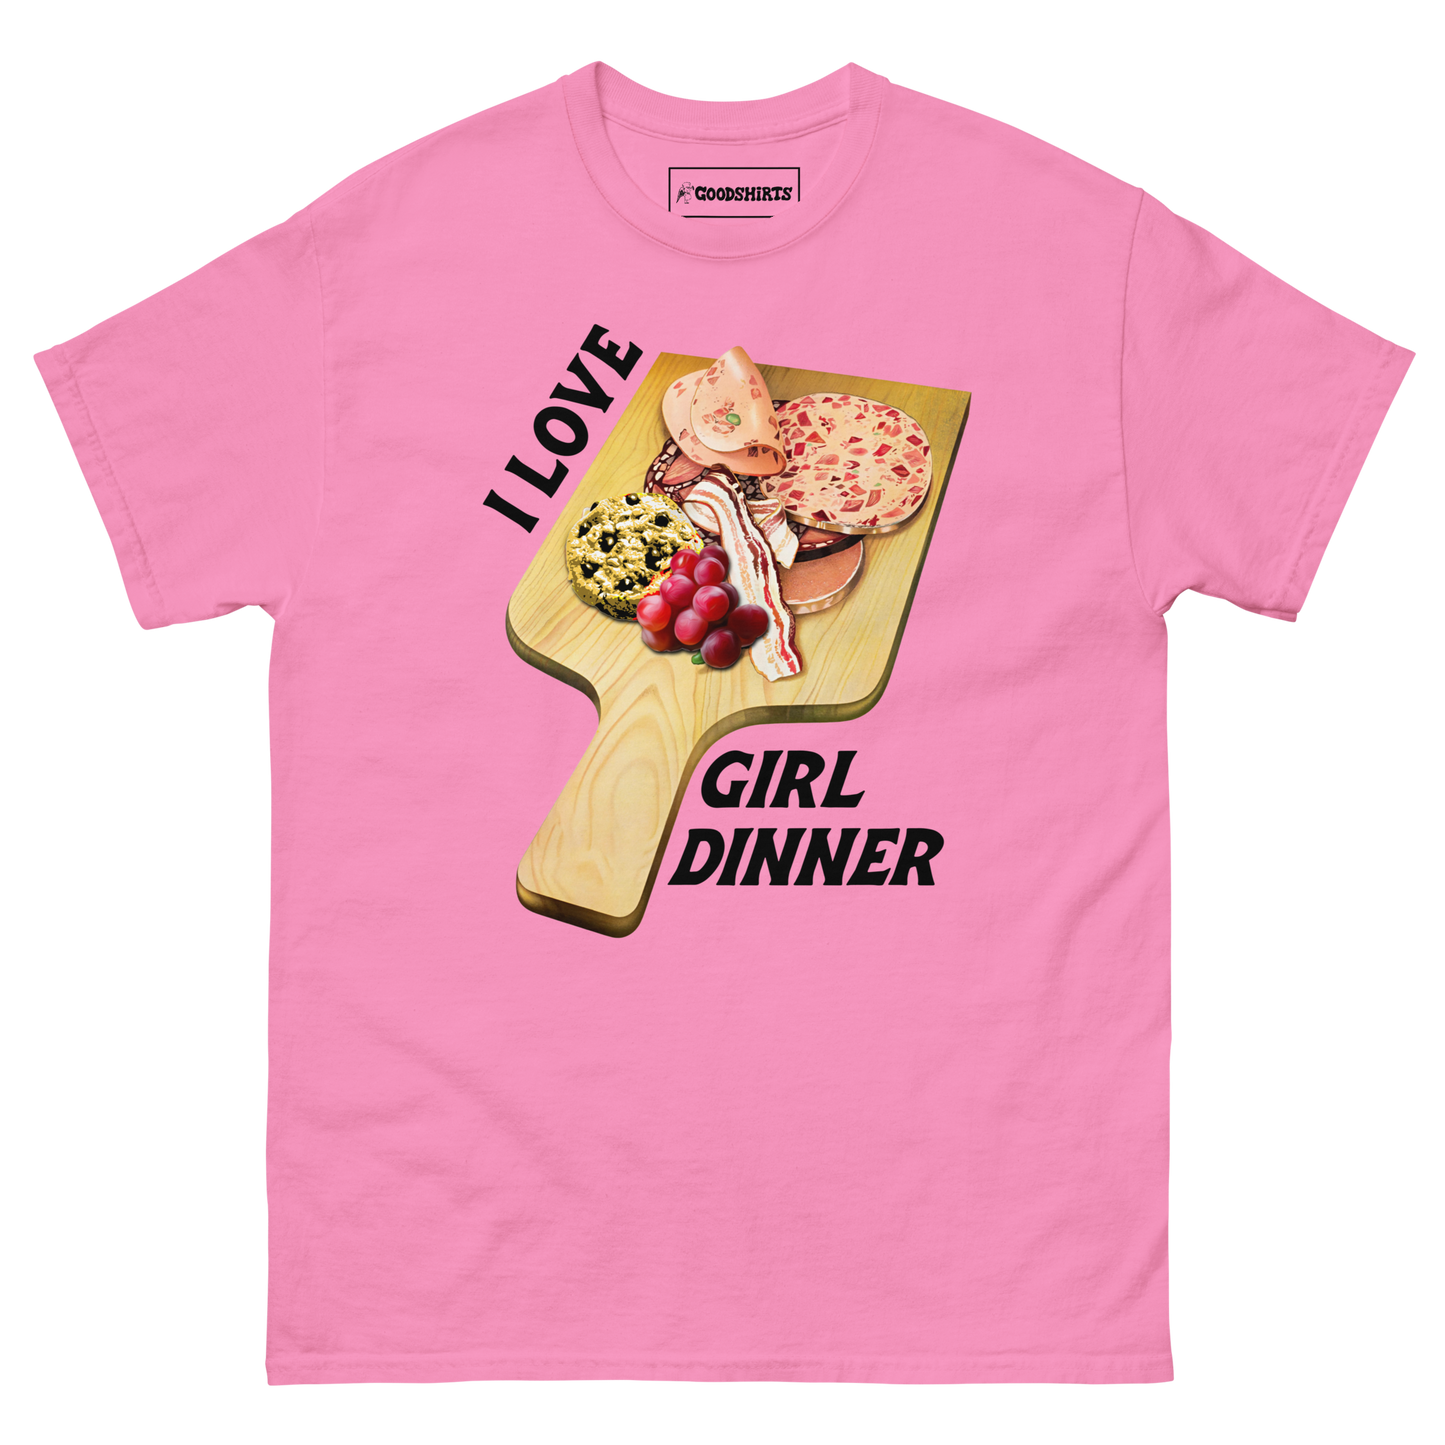 I Love Girl Dinner.